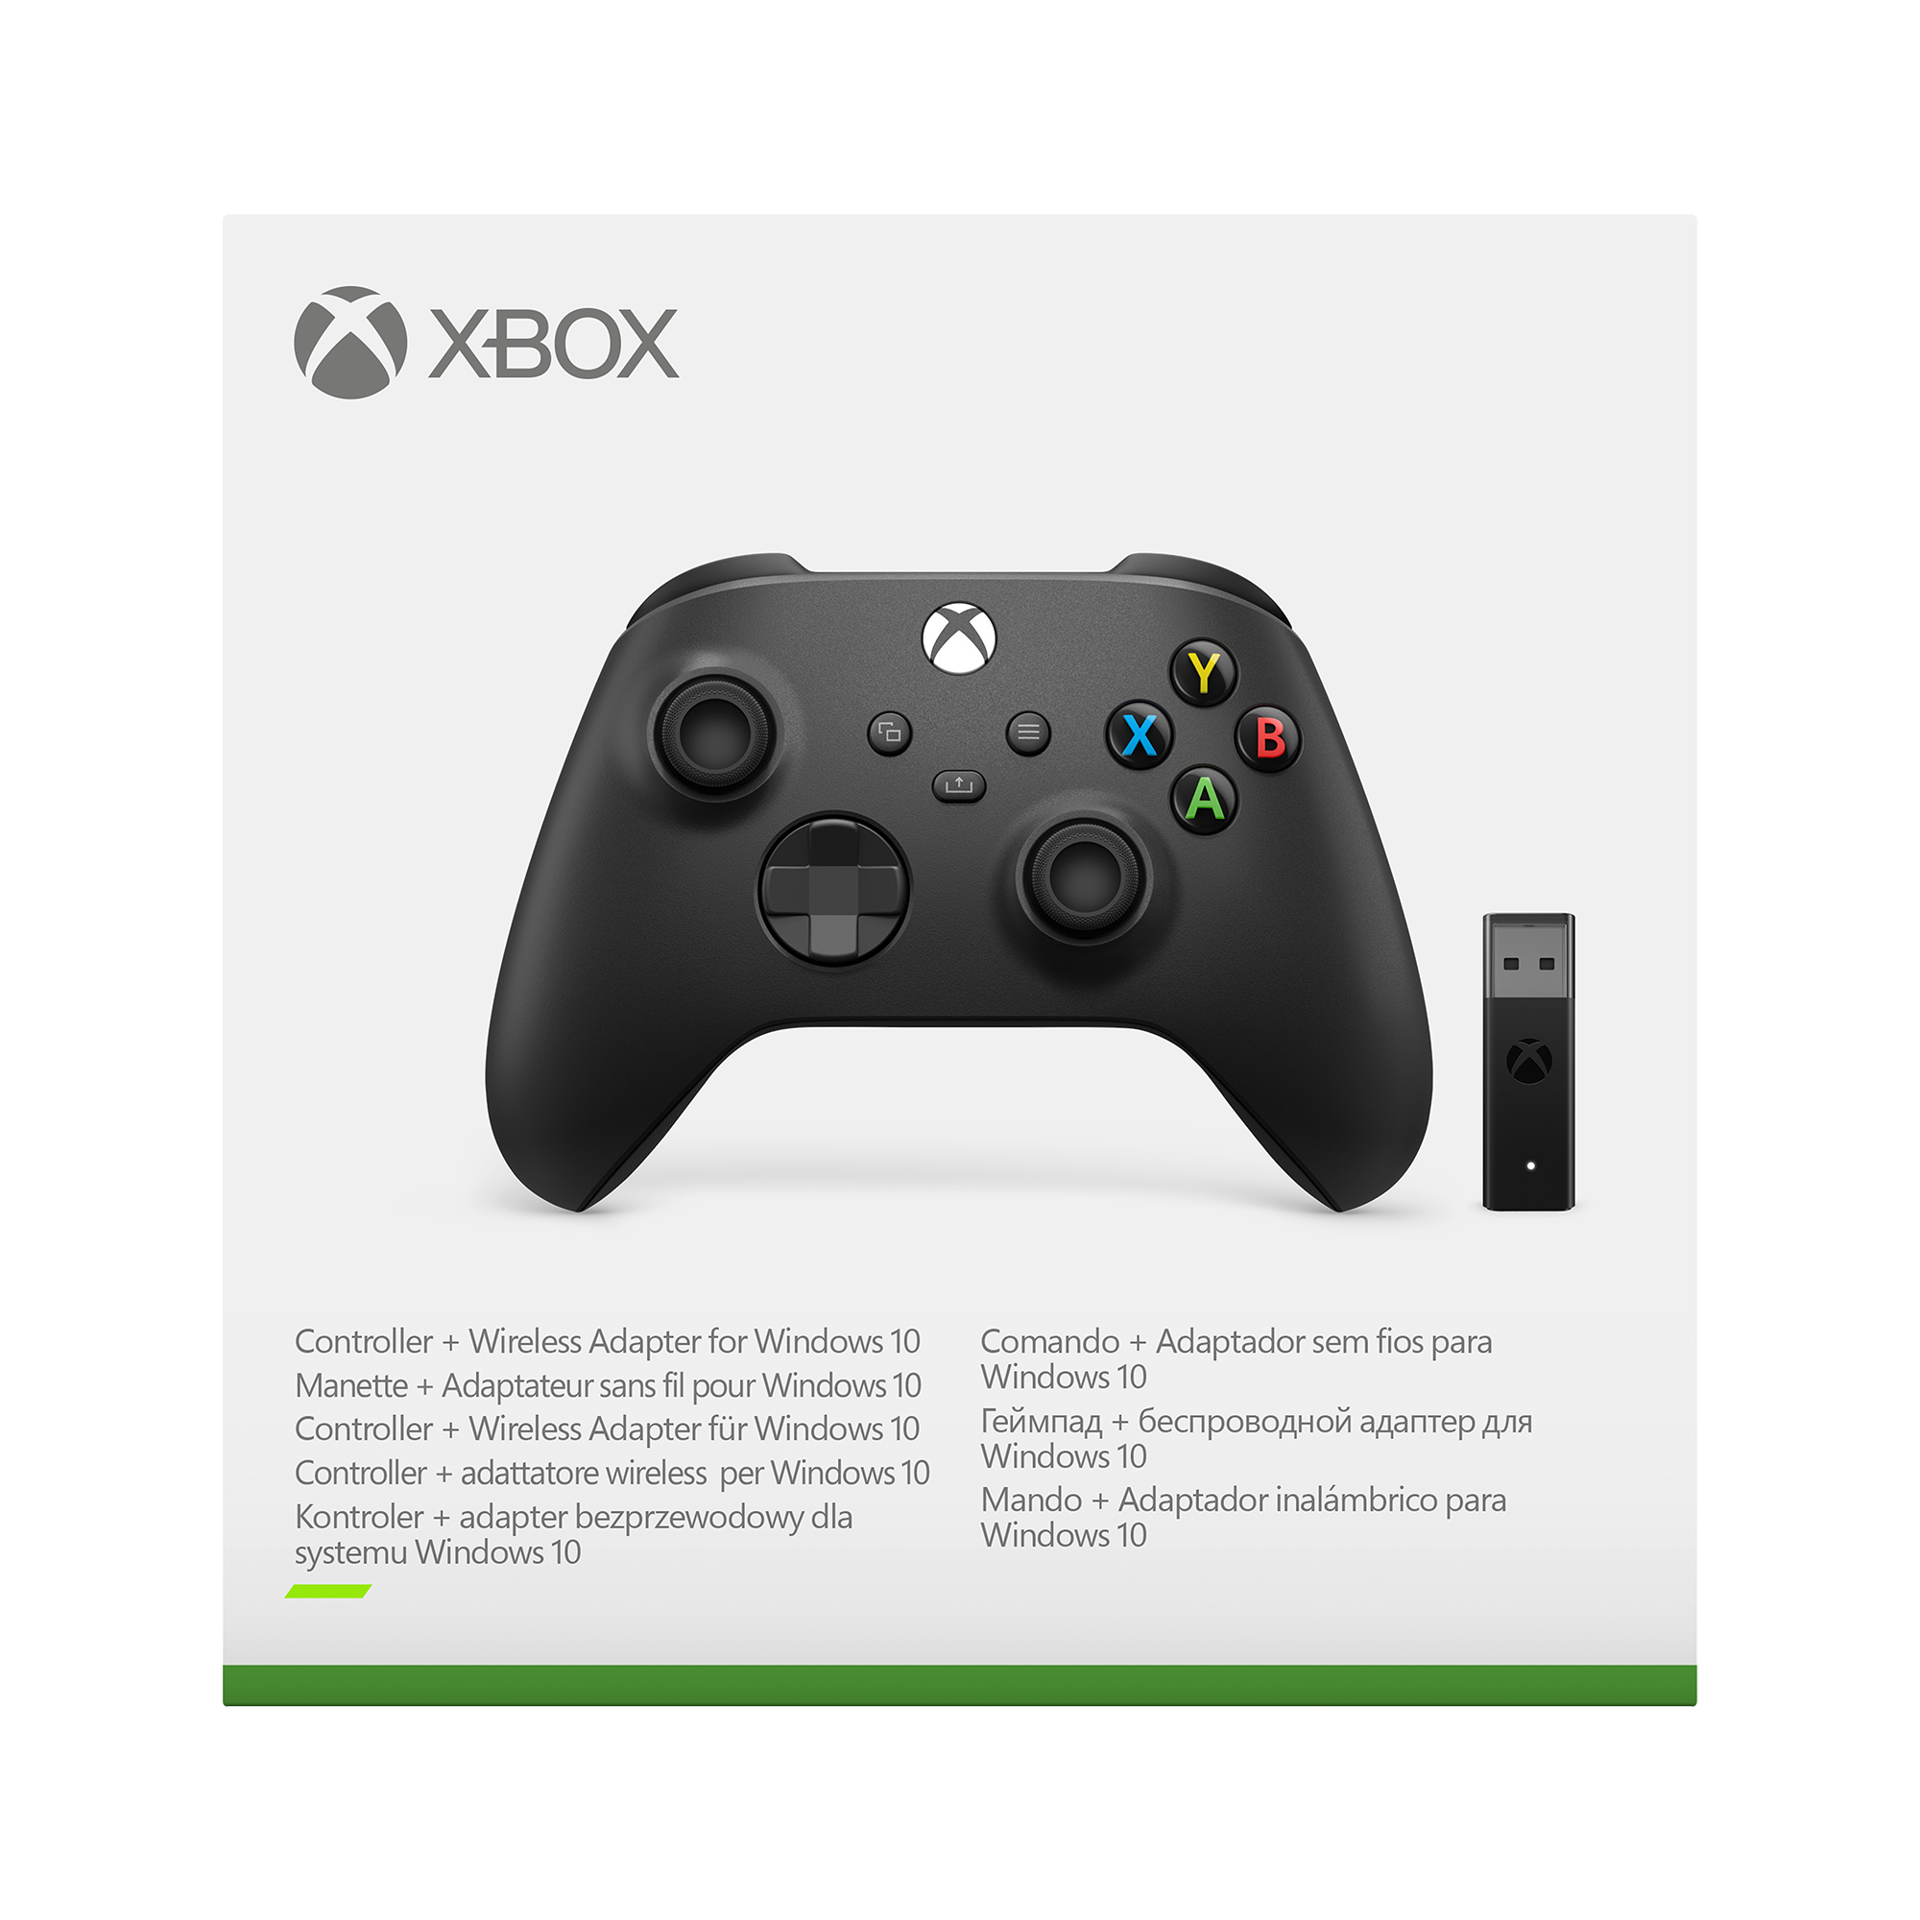 Manette sans fil Xbox Carbon Black + Adaptateur sans fil pour Windows 10, Xbox Series X|S, Xbox One et Mobile